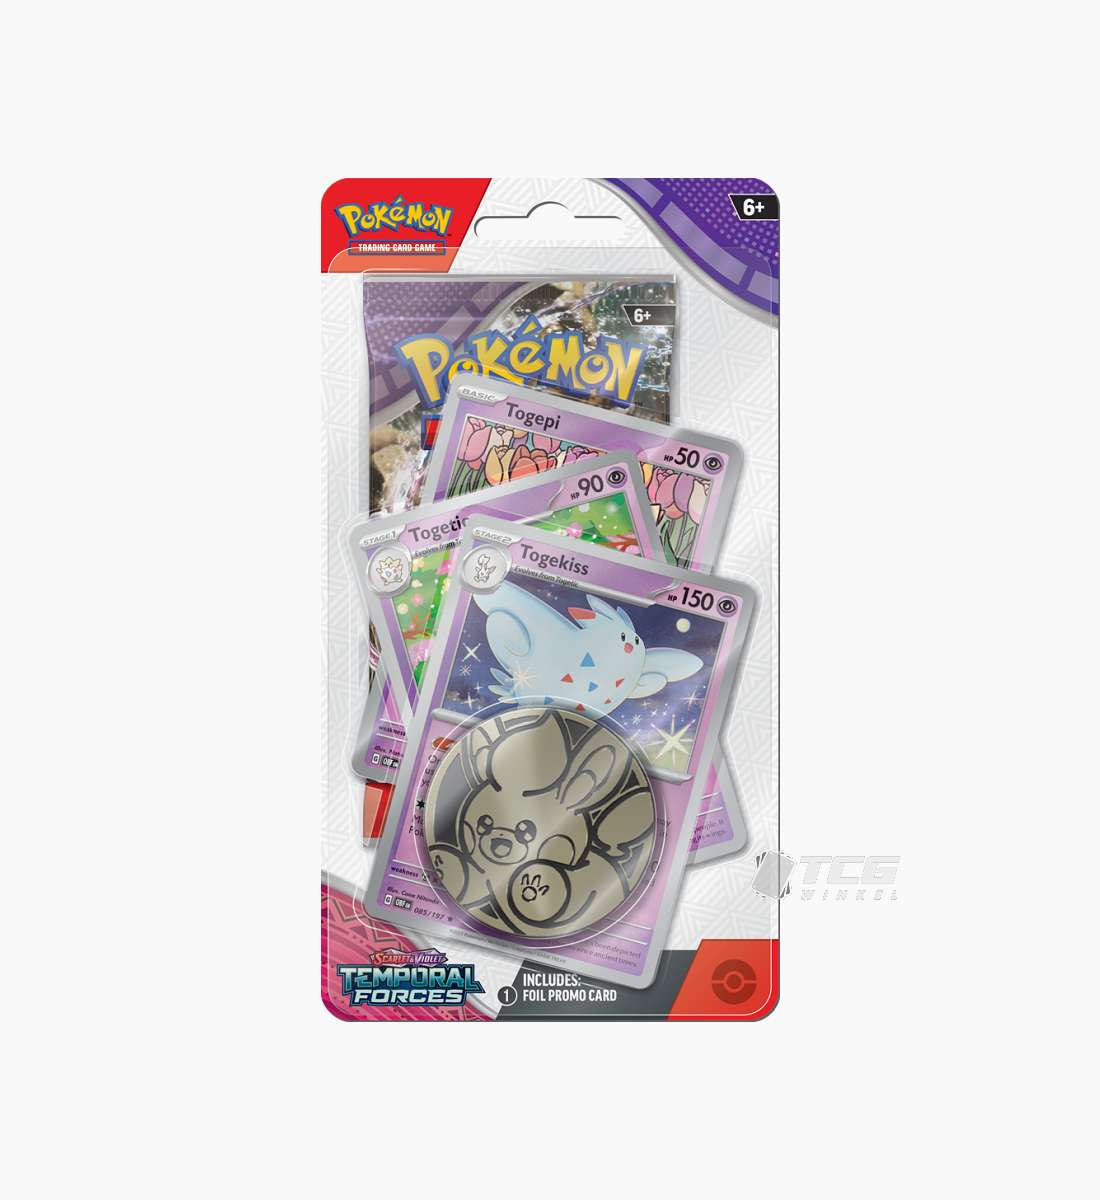 Pokémon TCG Scarlet &amp; Violet Temporal Forces Premium Checklane Blister